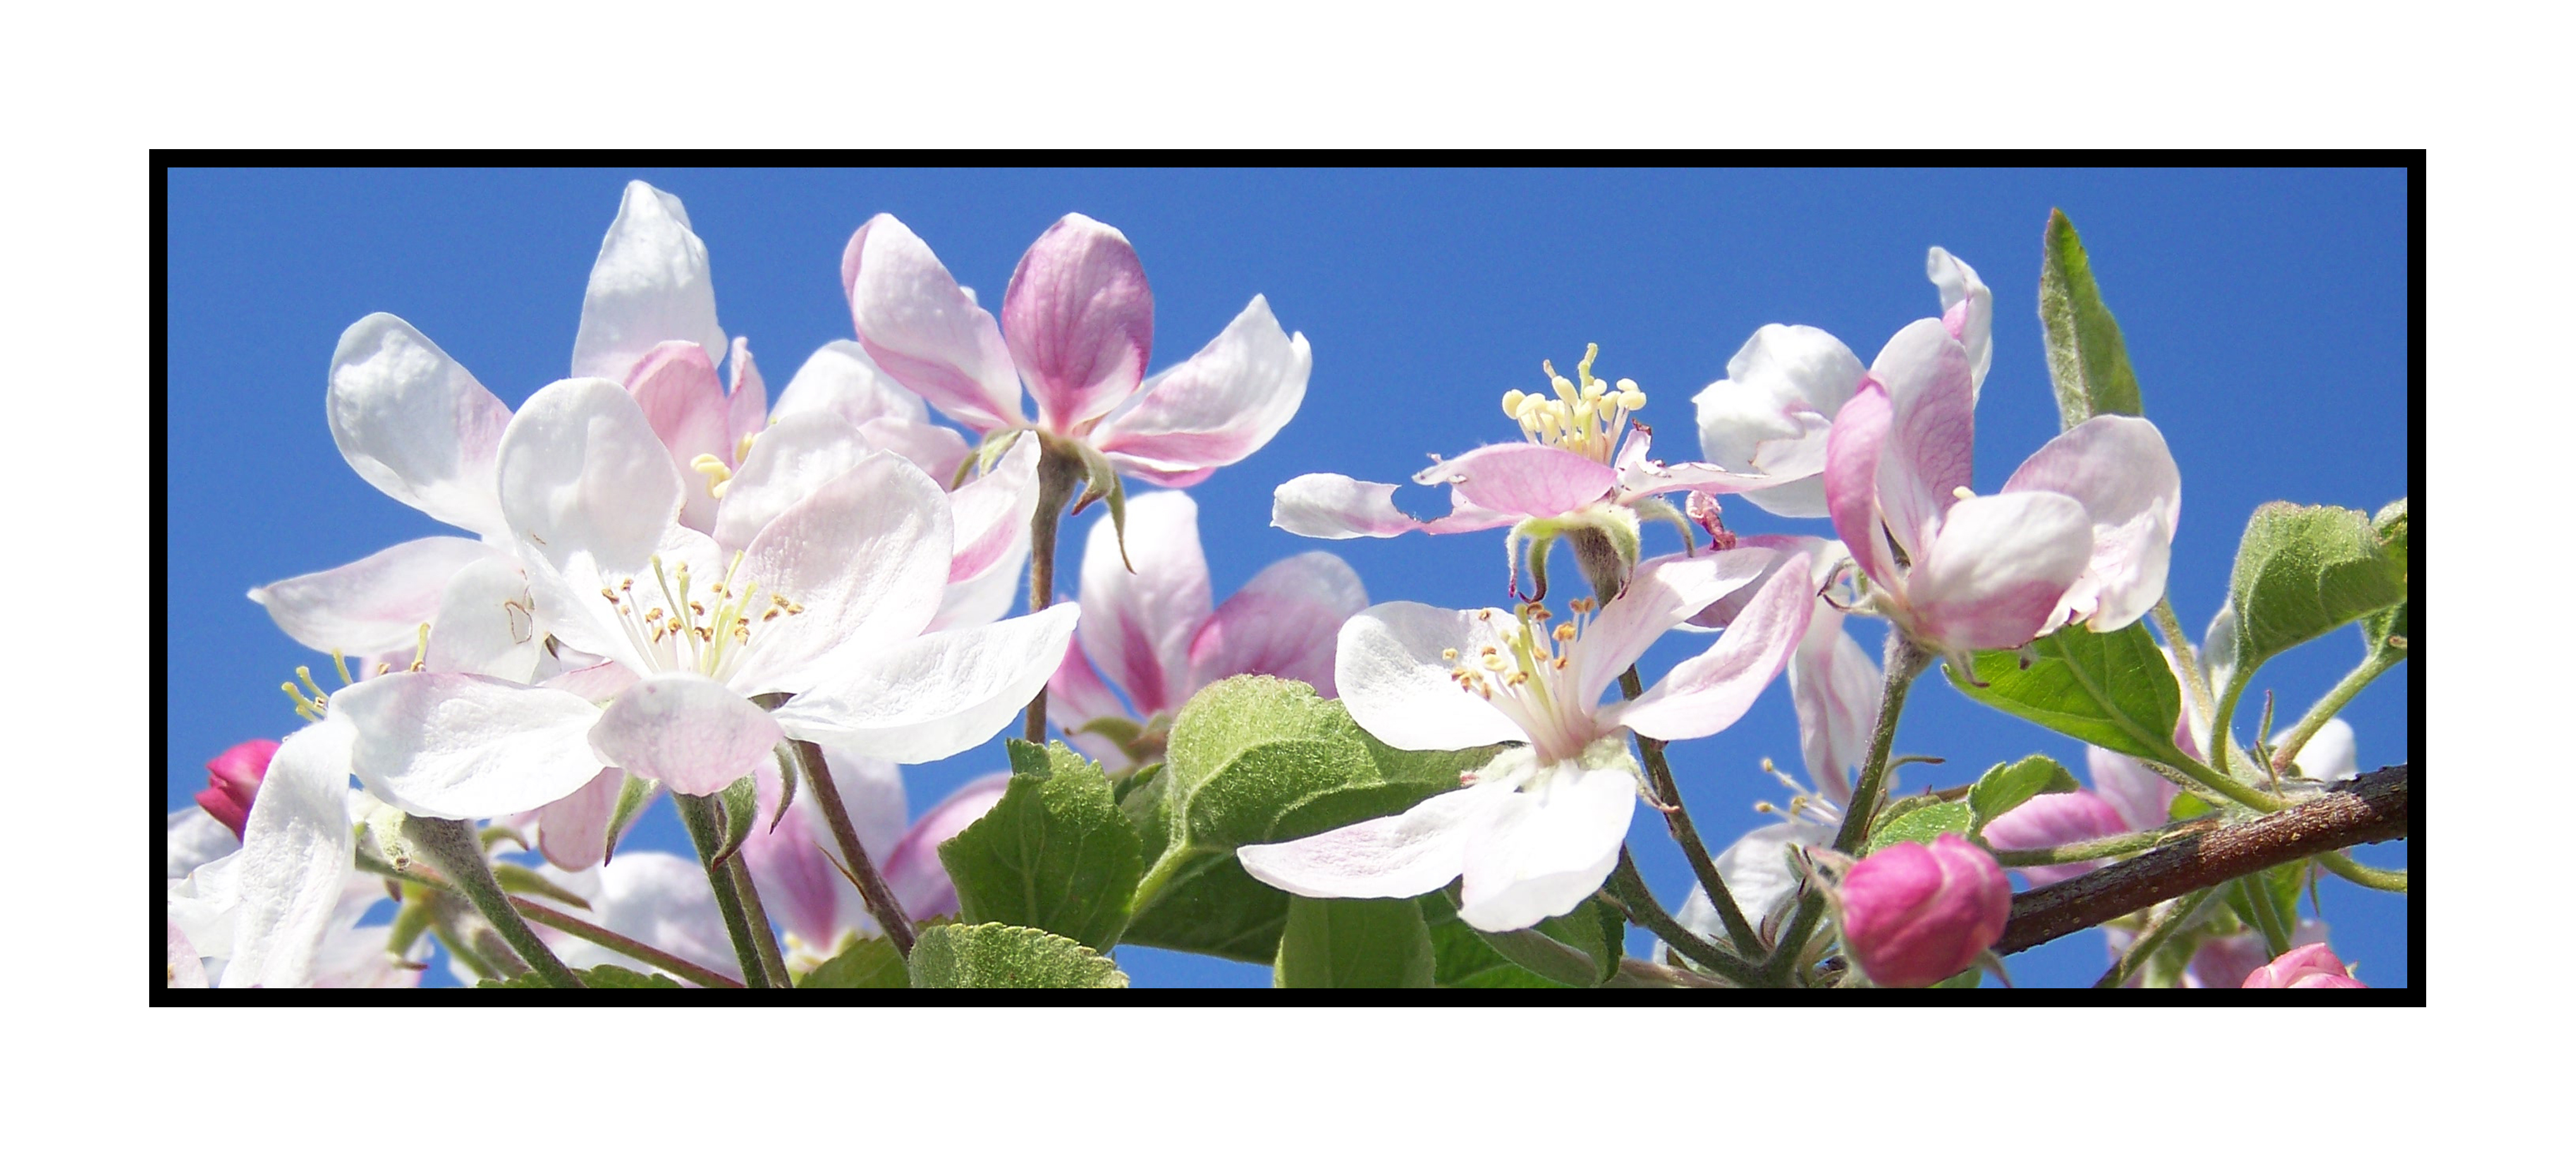 fleurs de pommiers-Pommes bio- locales- arboriculteur- ferme-magasin de producteurs - Gilly sur Isère / Albertville- savoie - terroir